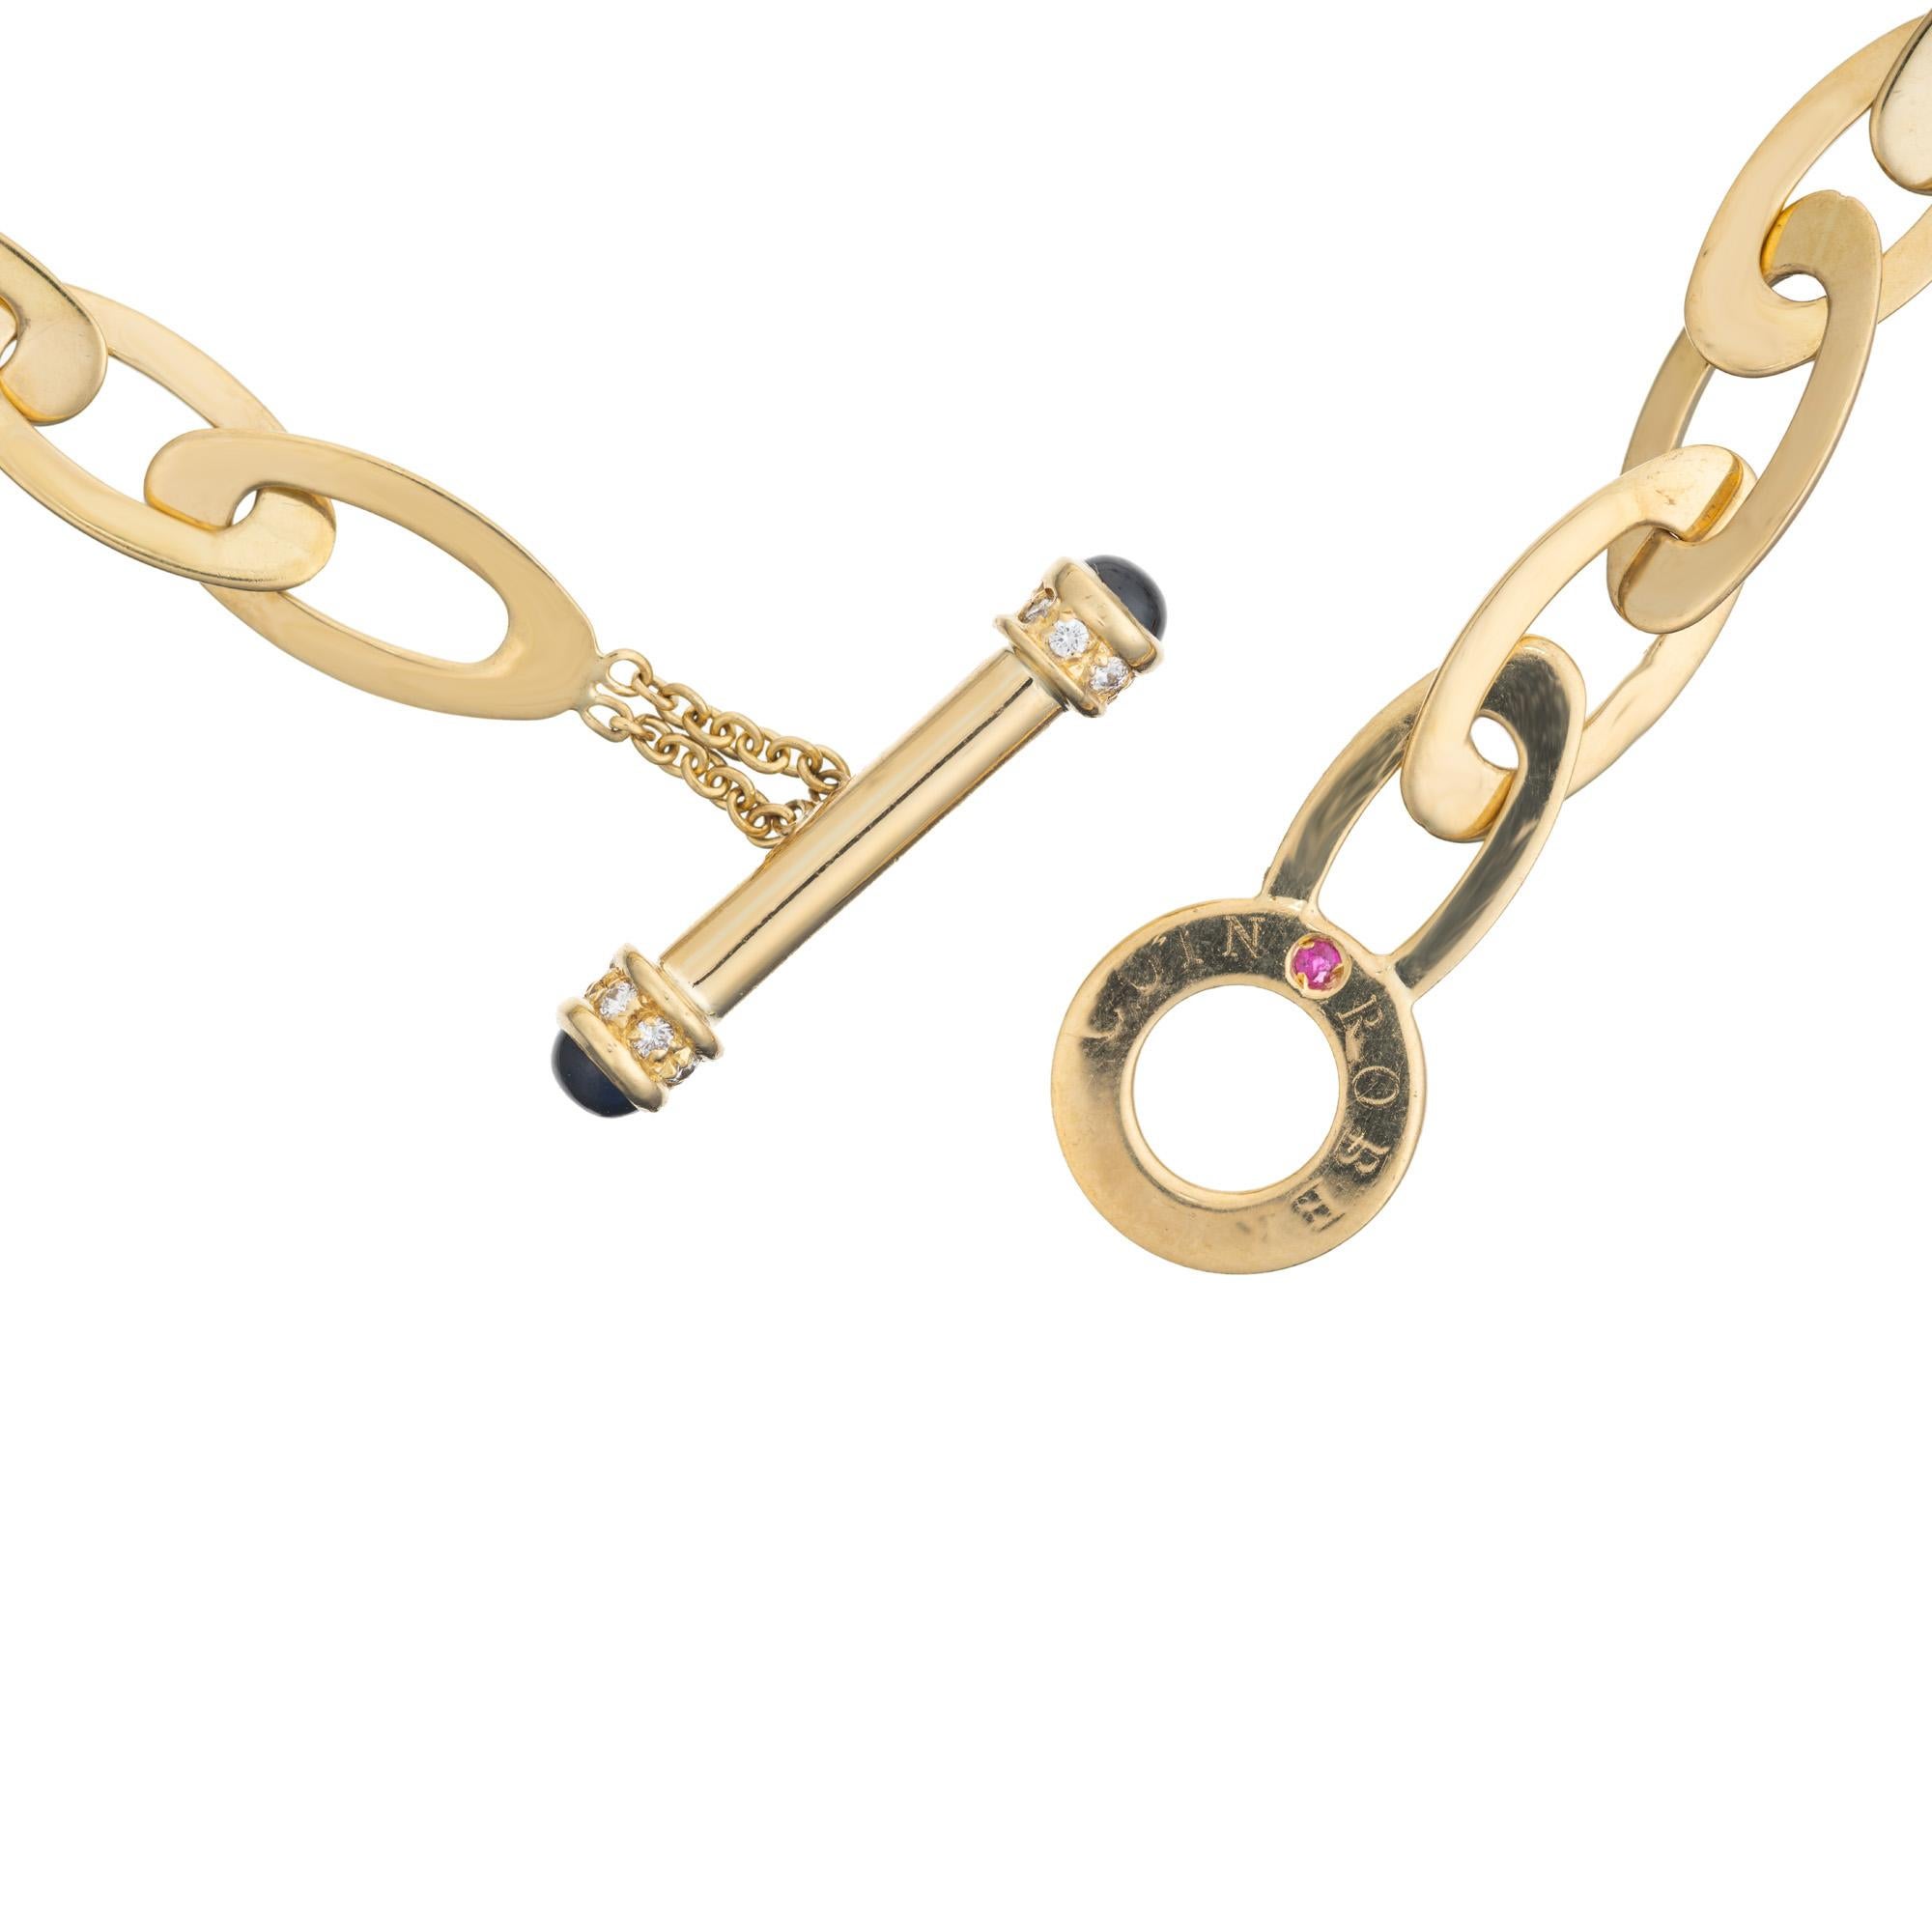 Schicke ovale Goldkette im Designer-Look. Diese Roberto Coin, Link Halsketten hat eine Gesamtlänge von 32 Zoll, so dass auf diese Länge oder in einem Multi-Kette Mode getragen werden. Die hochglanzpolierten, länglichen, ovalen Glieder aus 18 Karat